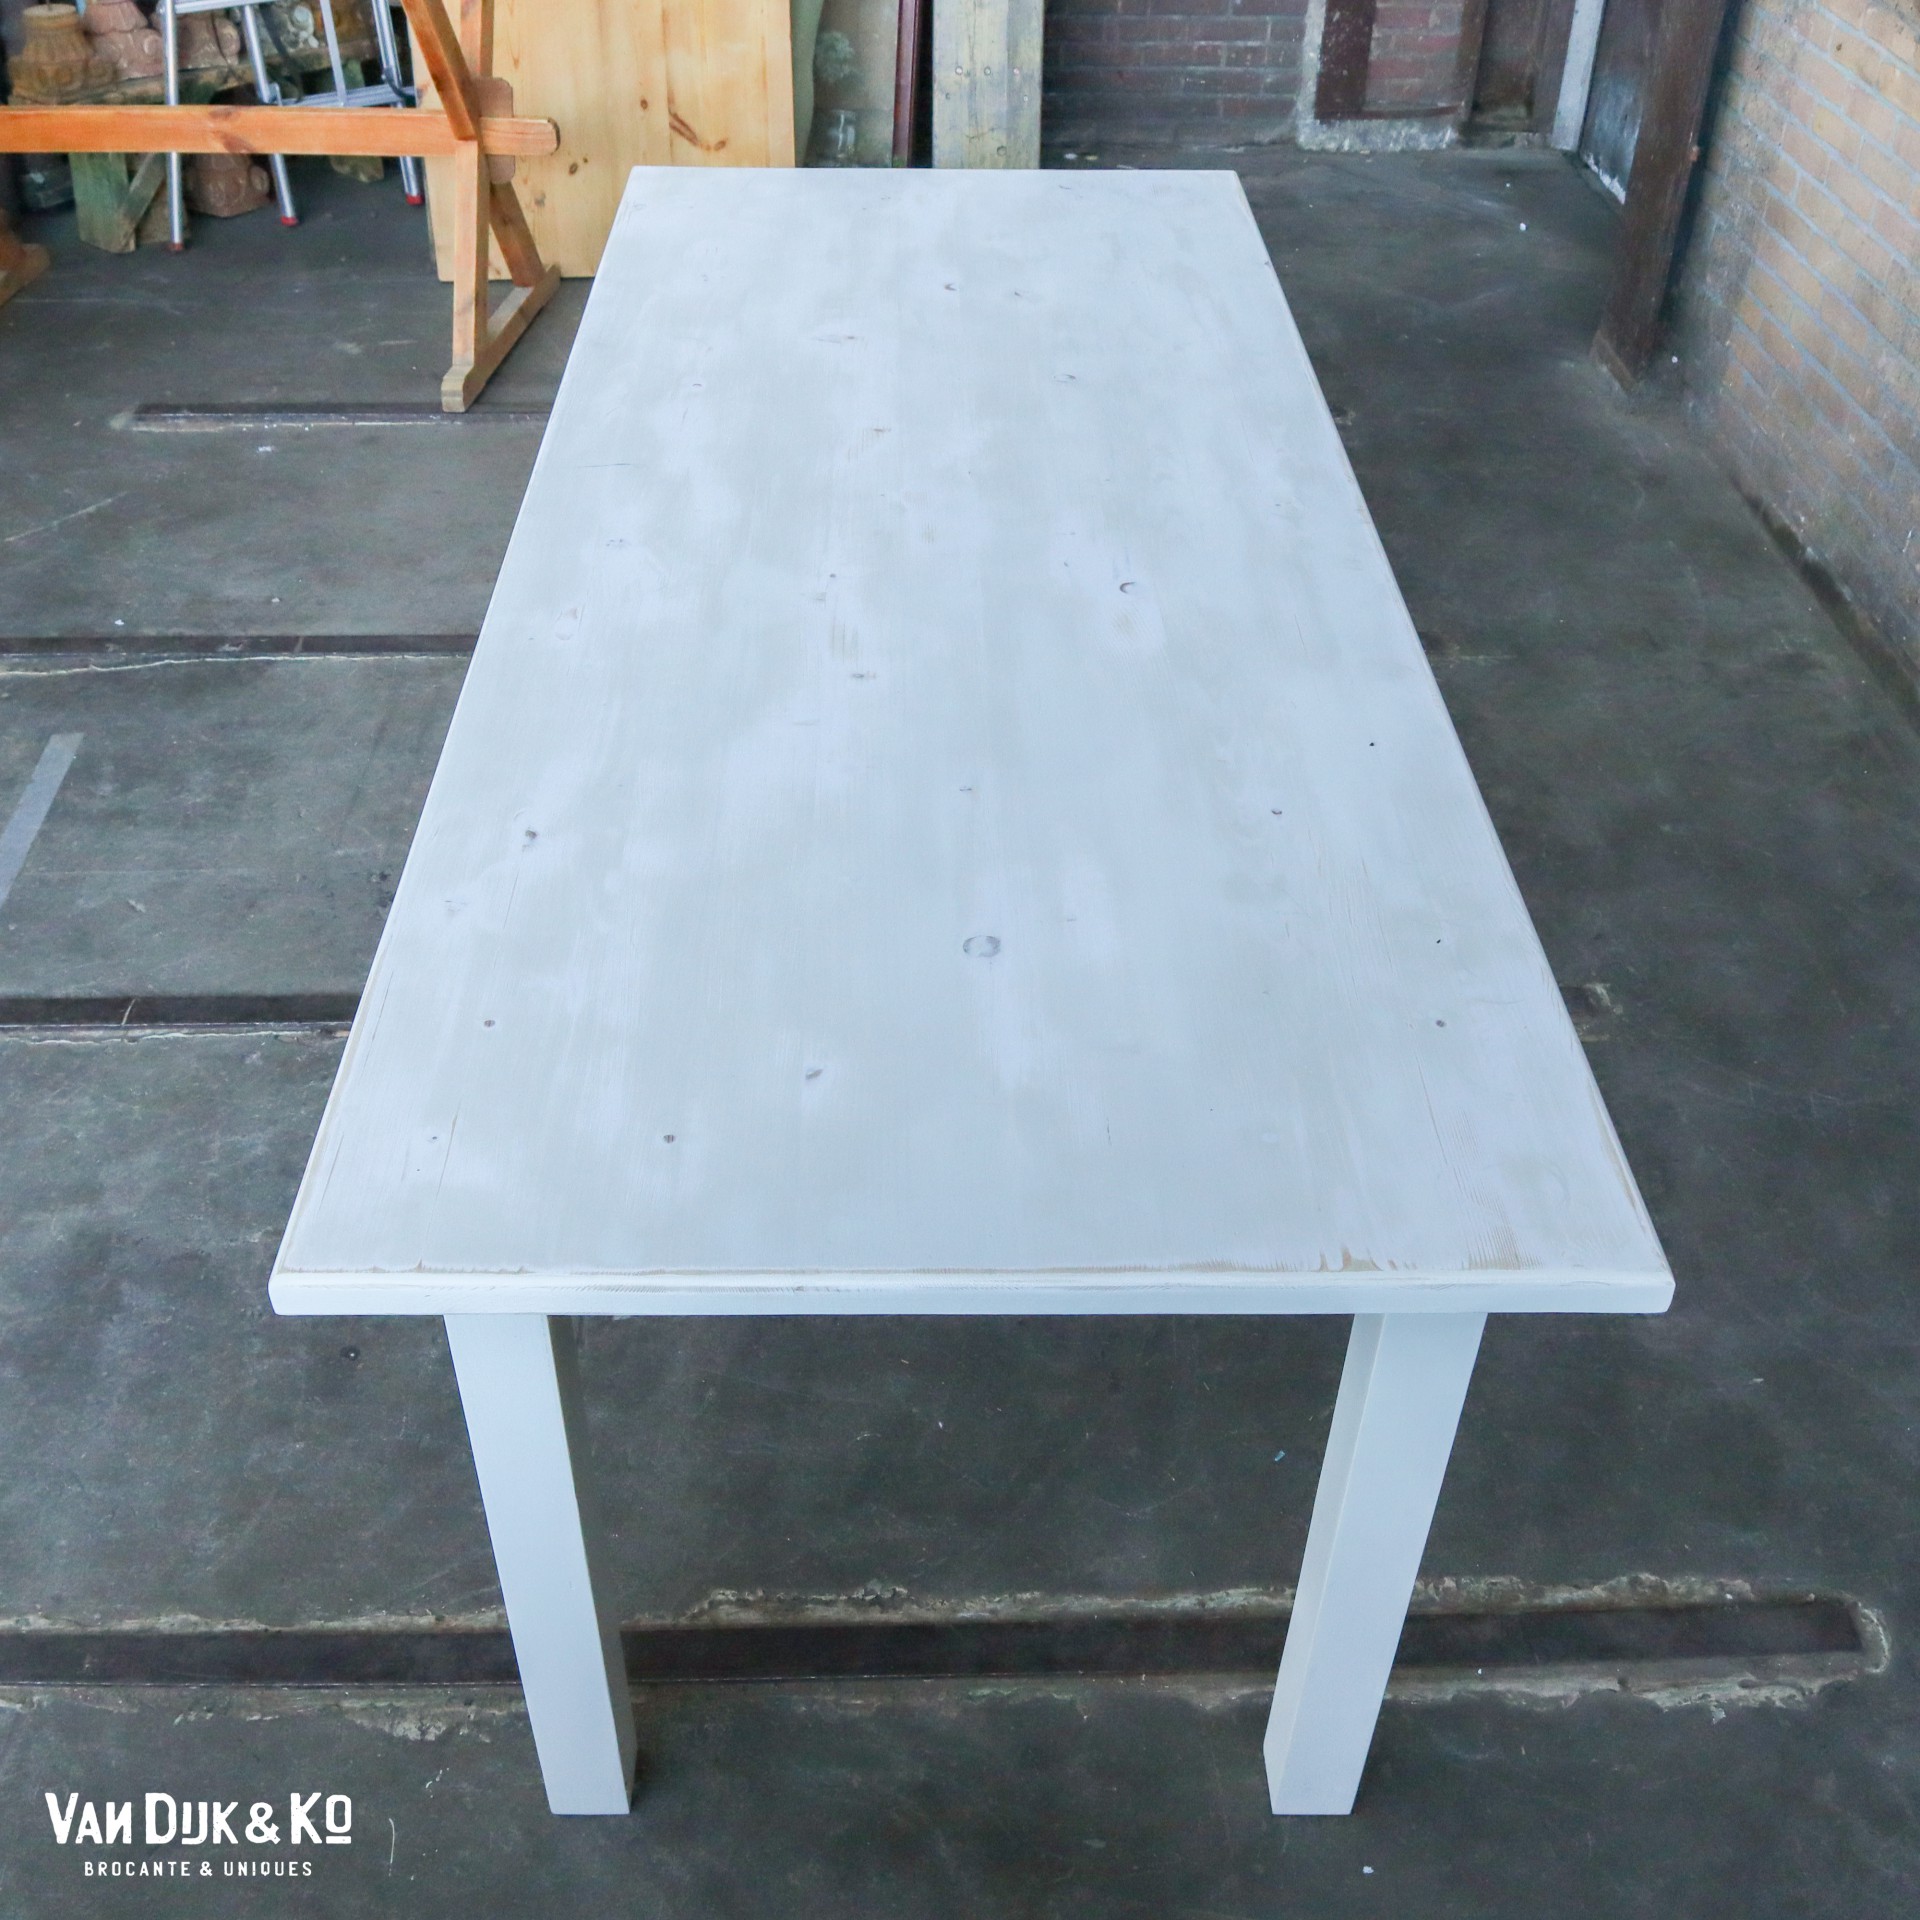 Onderdompeling Succes Geschiktheid Witte houten tafel » Van Dijk & Ko